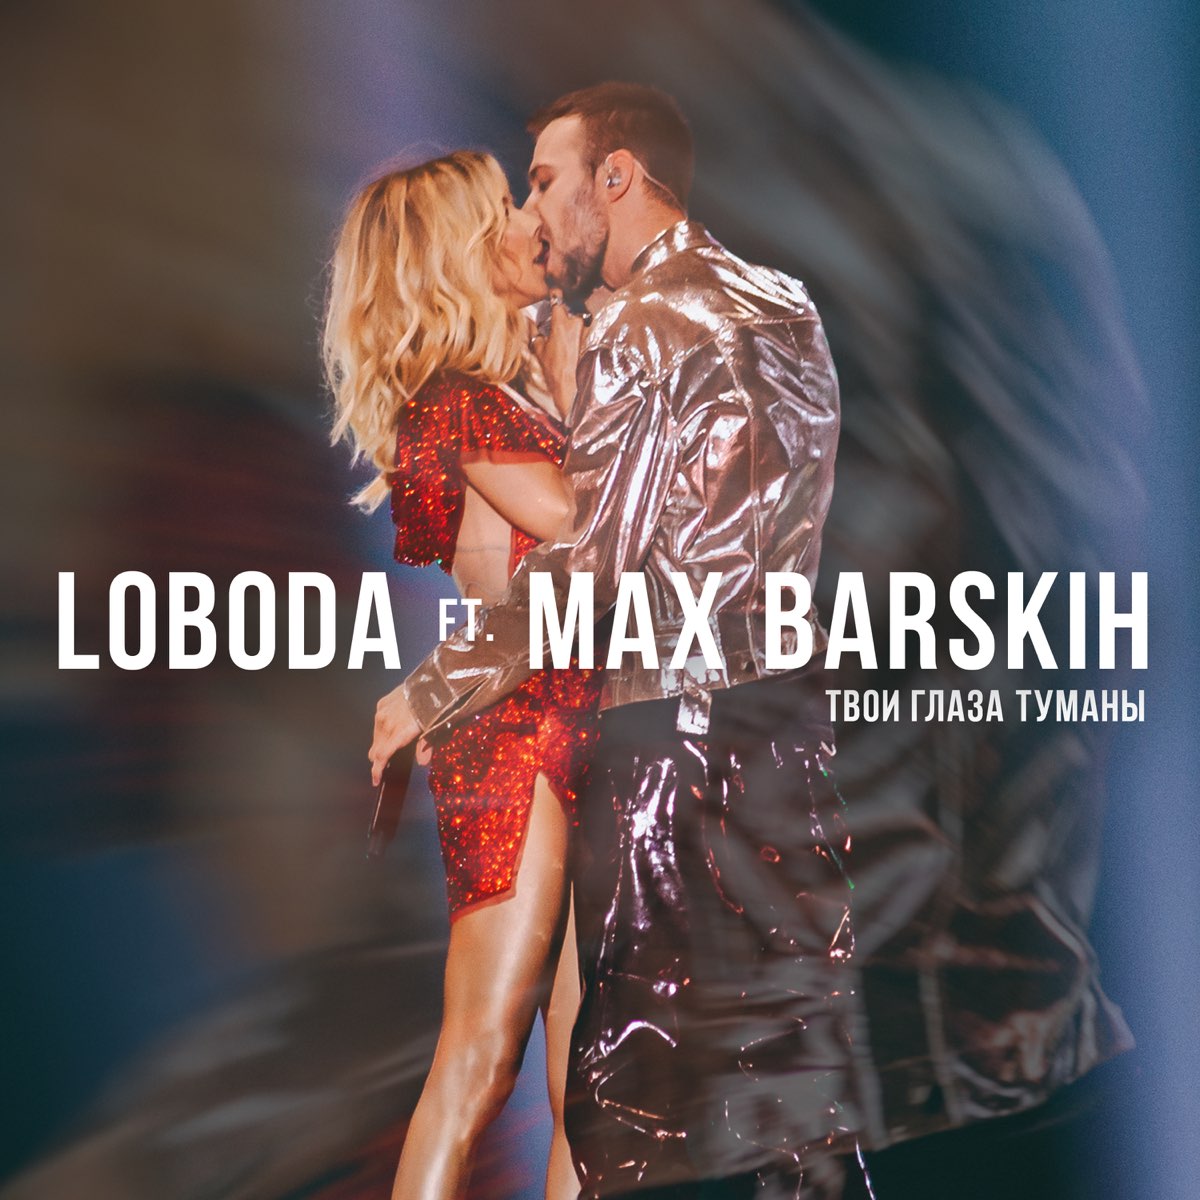 Песня поцелуй прямо в сердце. LOBODA & Макс Барских -. Макс Барских с Лободой.